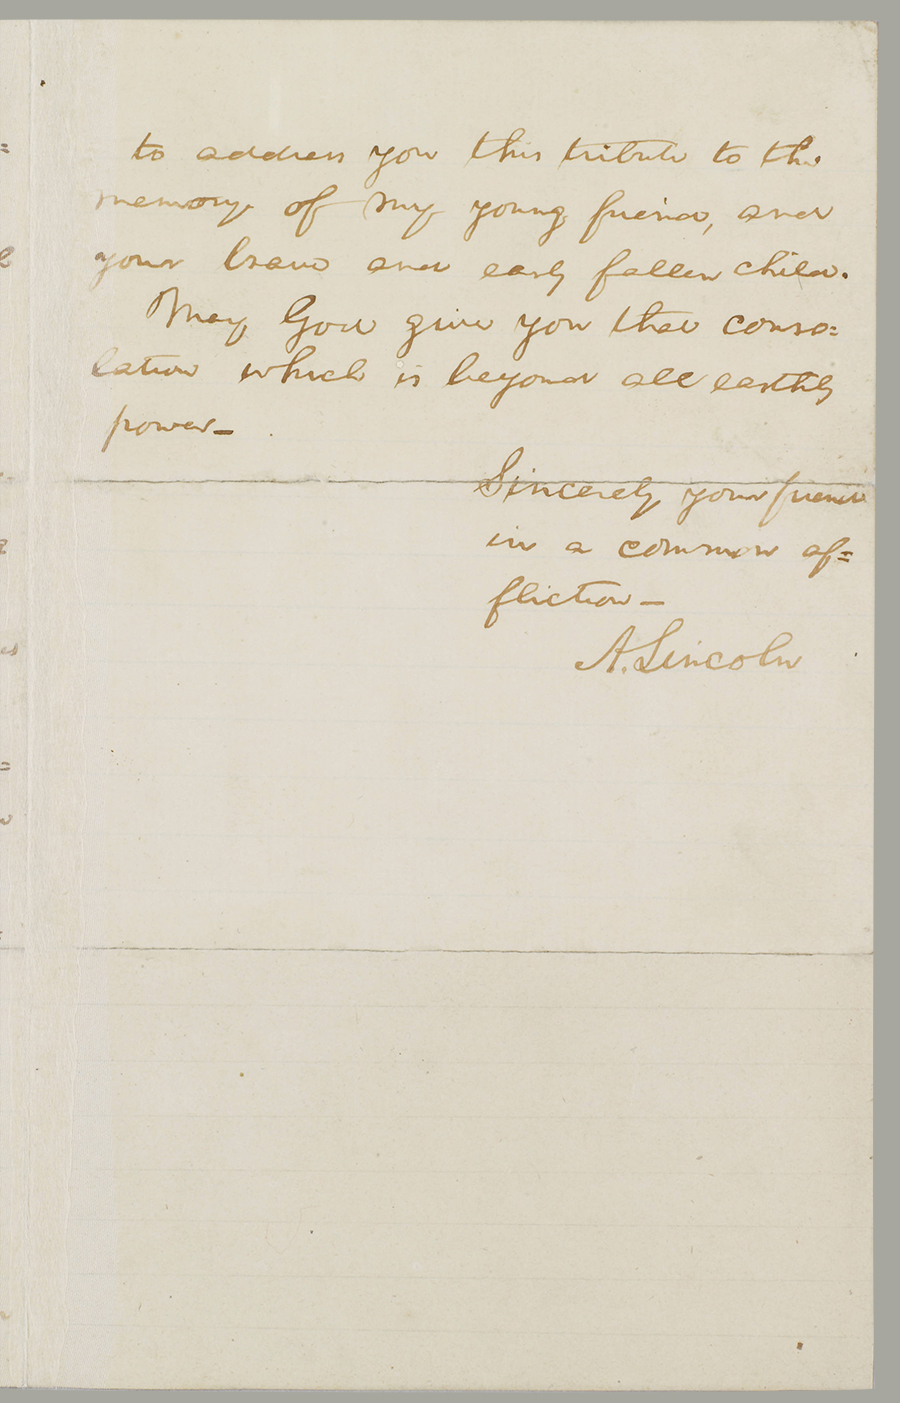 Lincoln’s condolence letter to Col. E. E. Ellsworth’s parents